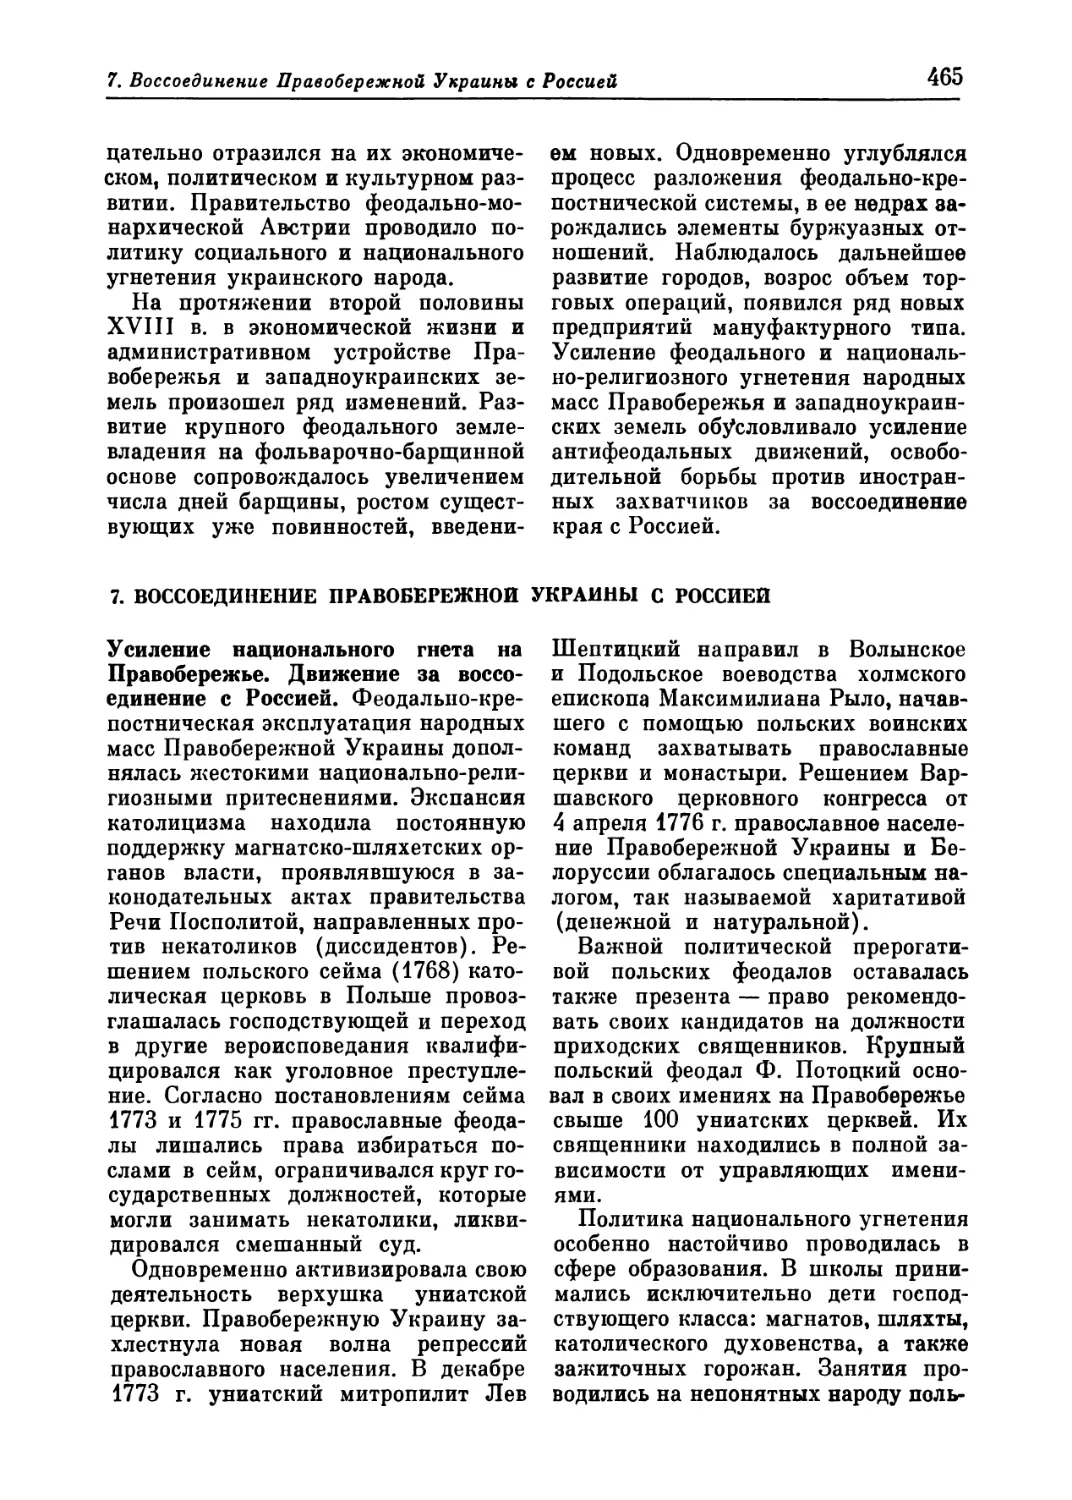 7. Воссоединение Правобережной Украины с Россией